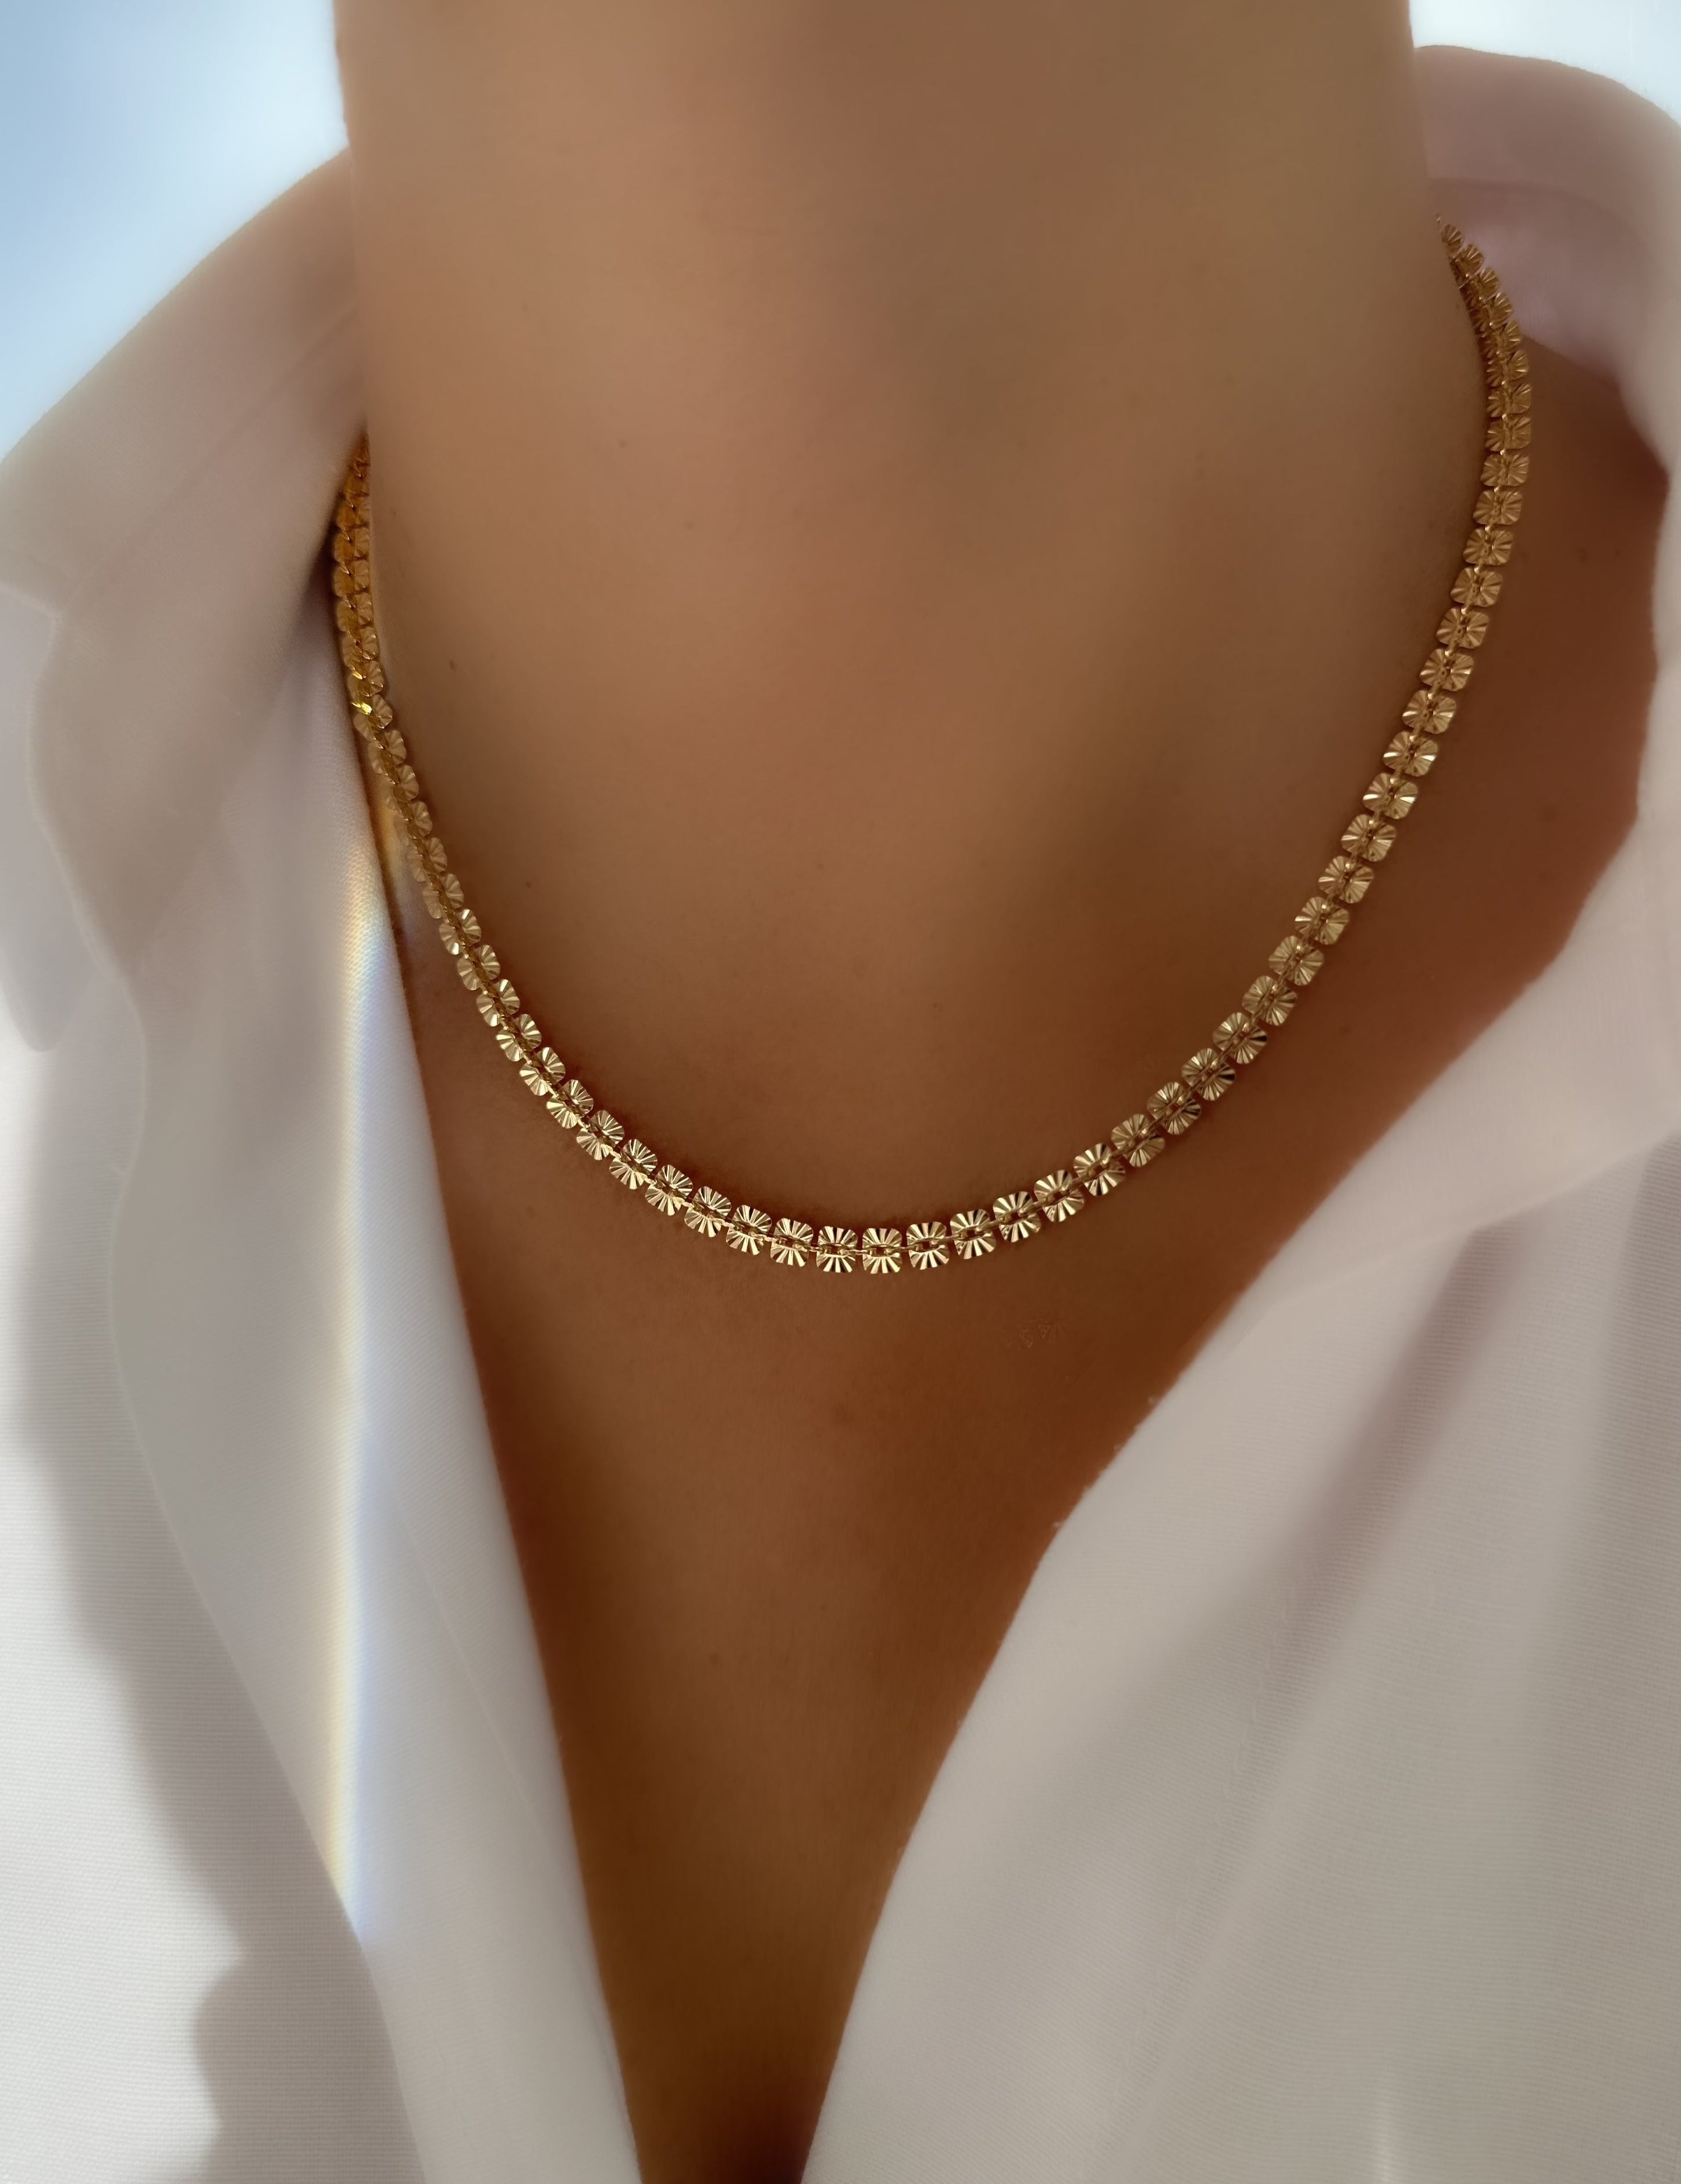 Le Marshand®  -  Joyería en plata 925, chapado en Oro 24K - Collar Emily - Diseños propios - Brazaletes, pulseras, collares y pendientes - Joyería online - Mallorca